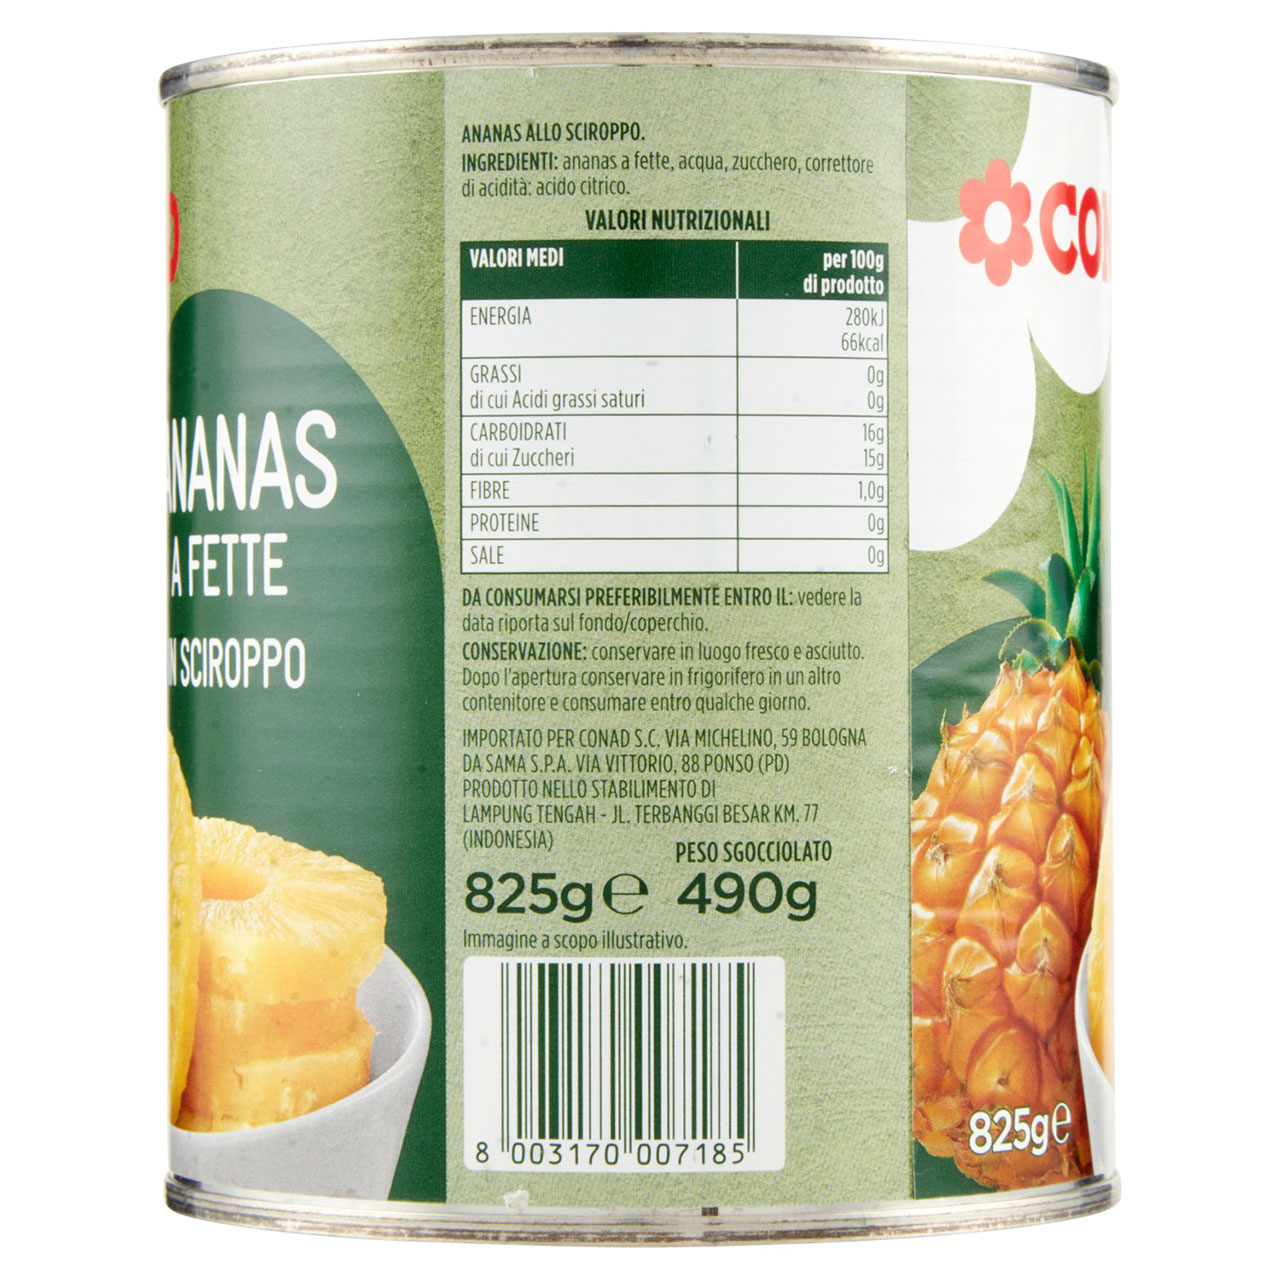 Ananas a Fette in Sciroppo 825 g Conad